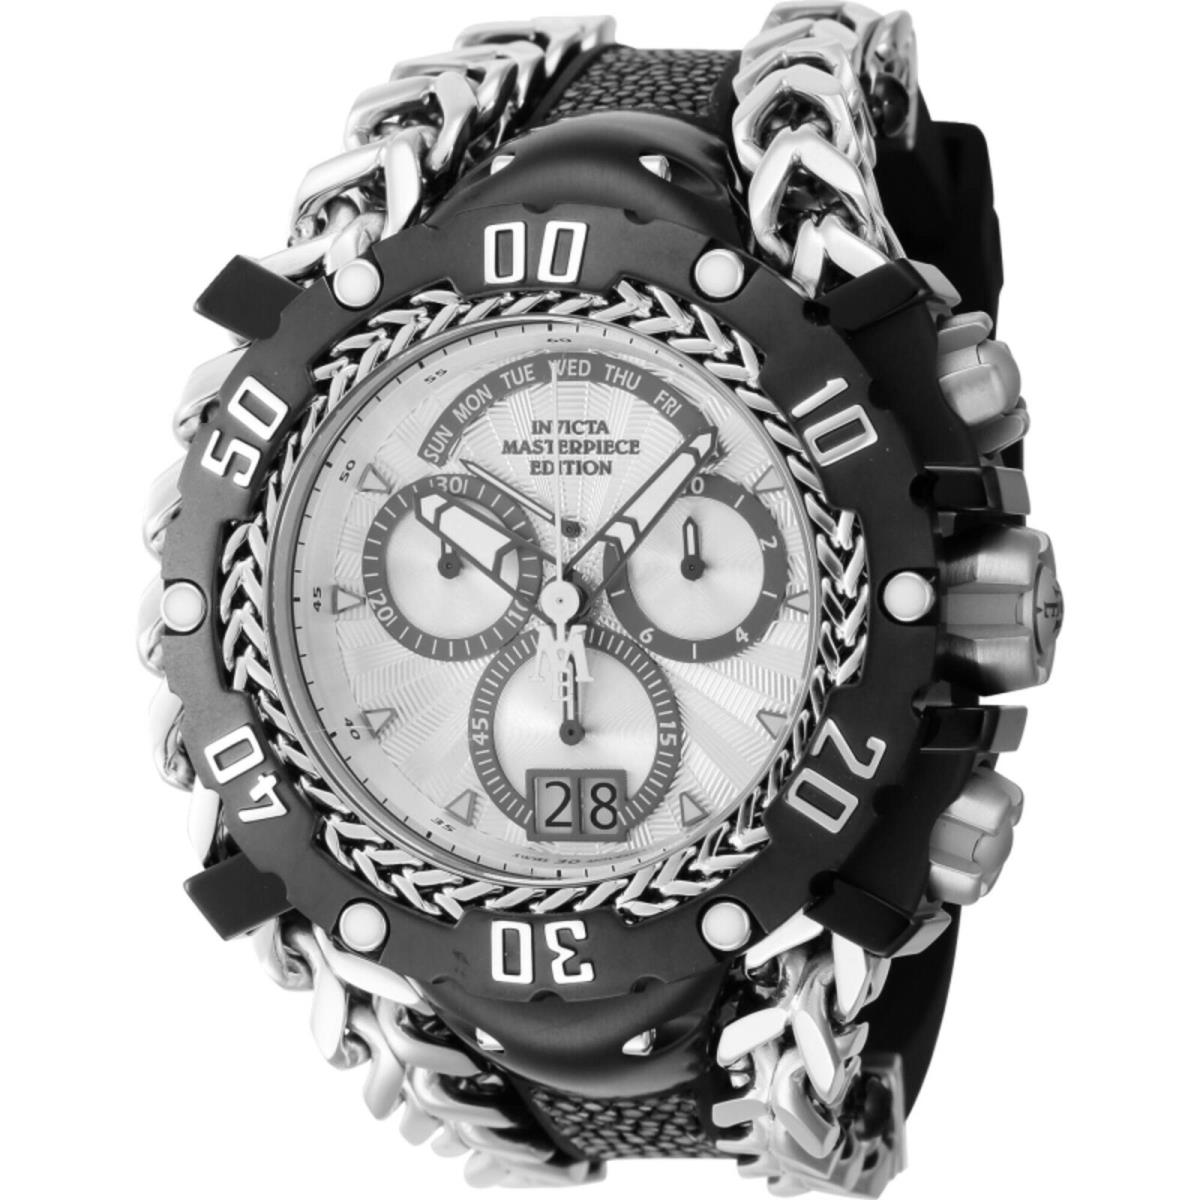 Invicta Men`s Watch Masterpiece Chronograph Black and Silver Strap Quartz 44621